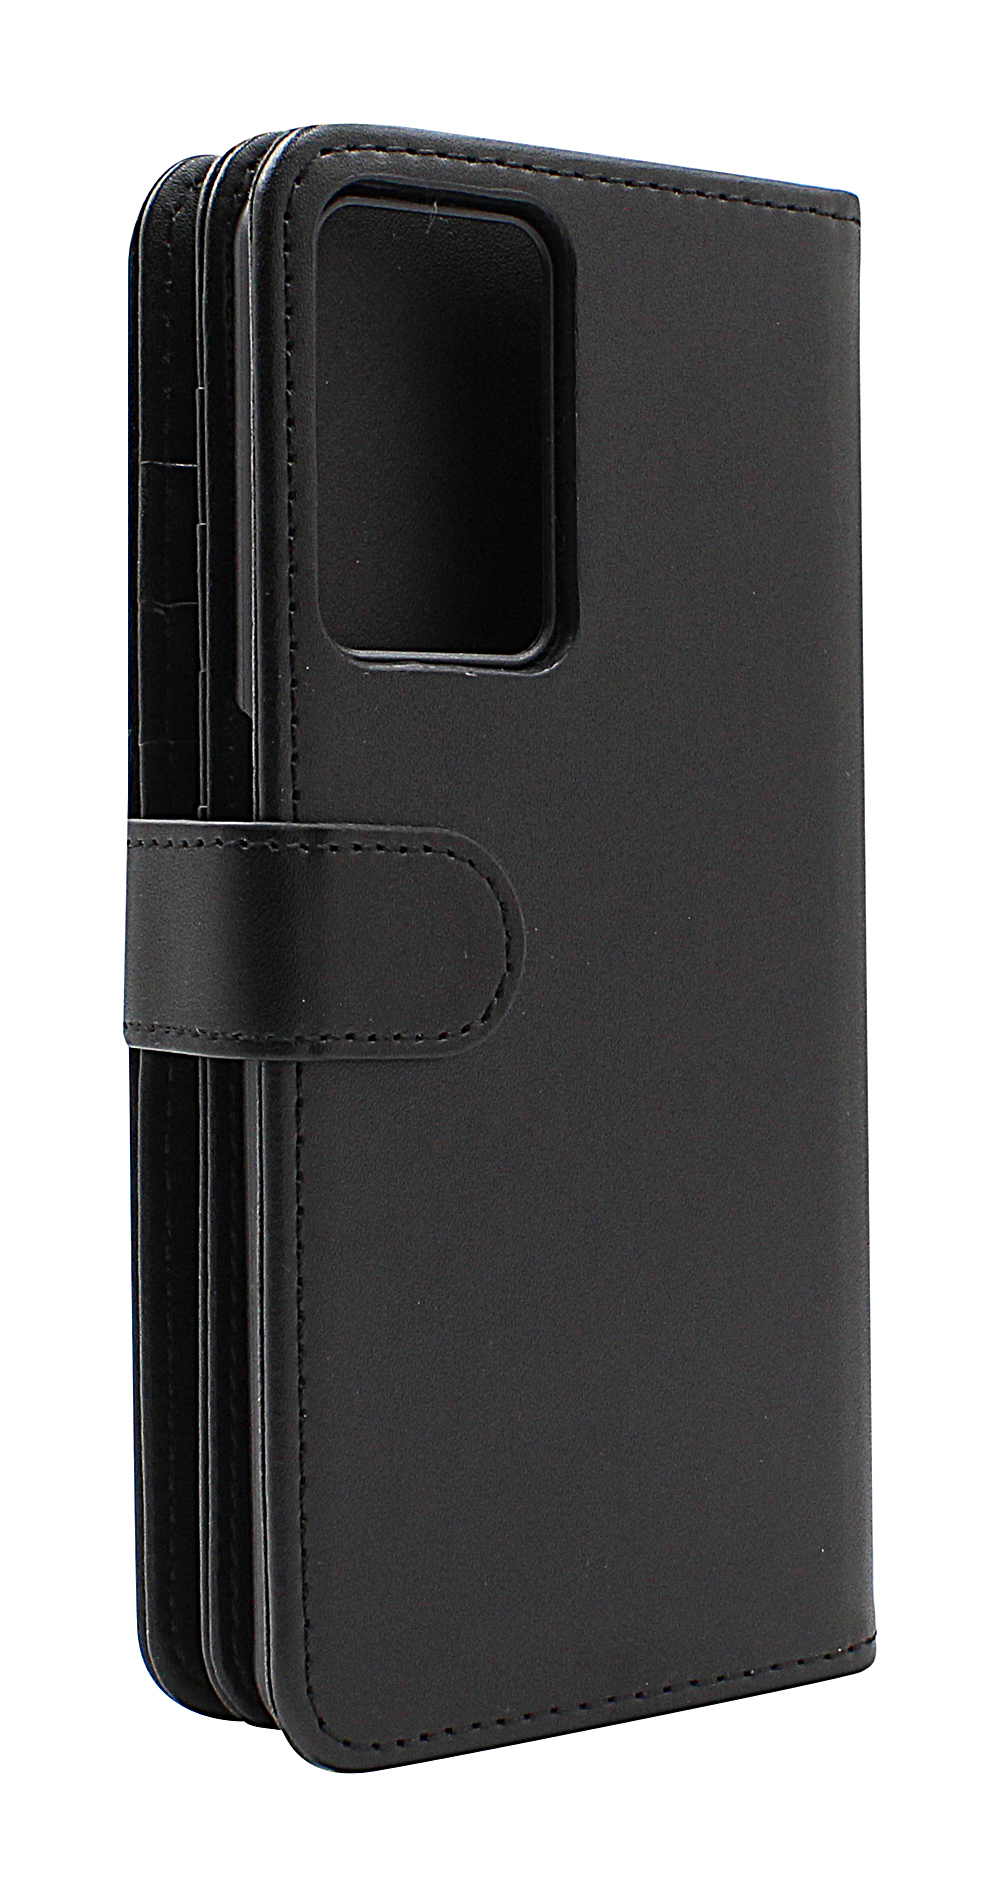 CoverInSkimblocker XL Wallet OnePlus Nord CE 2 5G